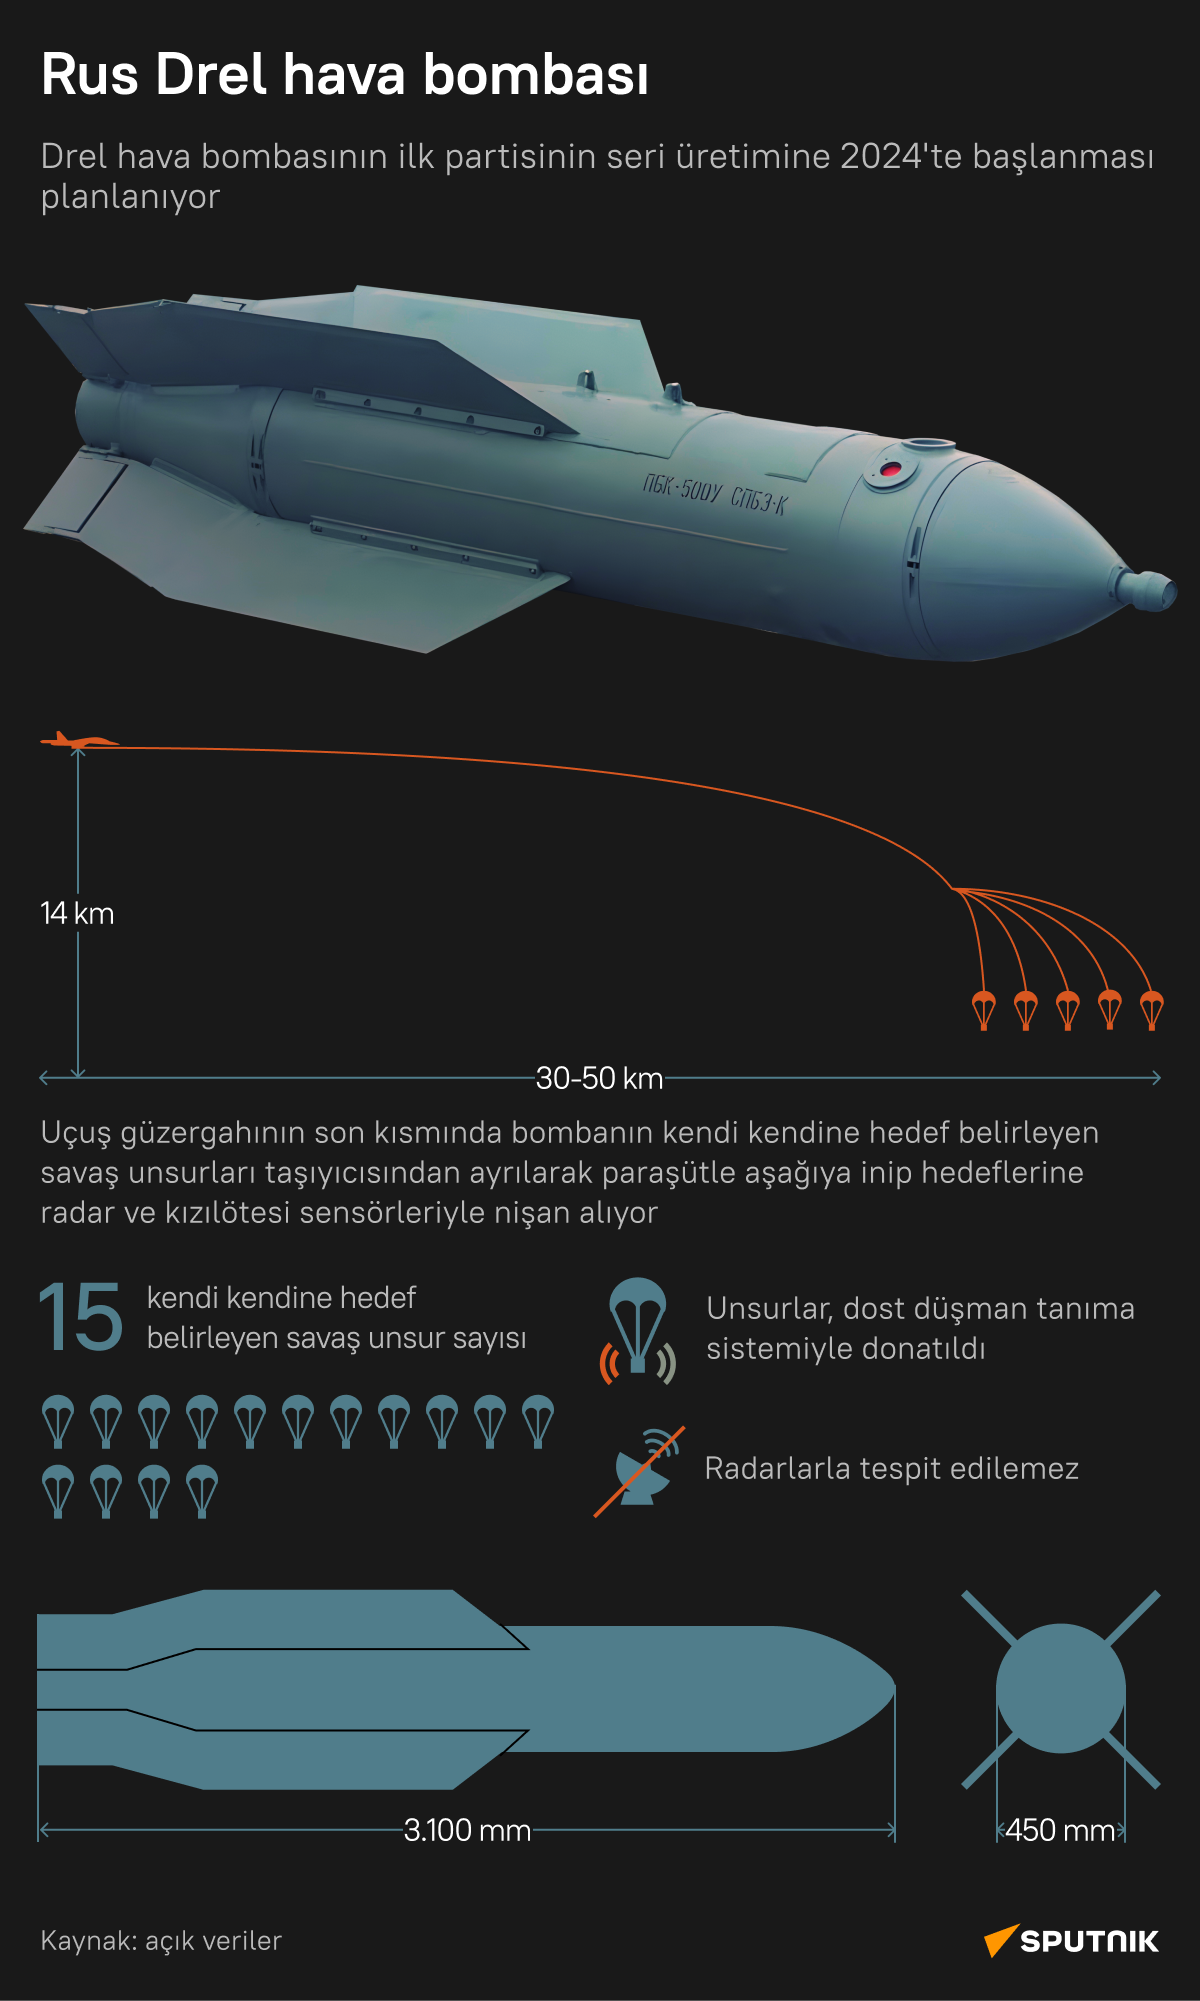 Rusya'nın Drel hava bombasının teknik özellikleri nelerdir?  - Sputnik Türkiye